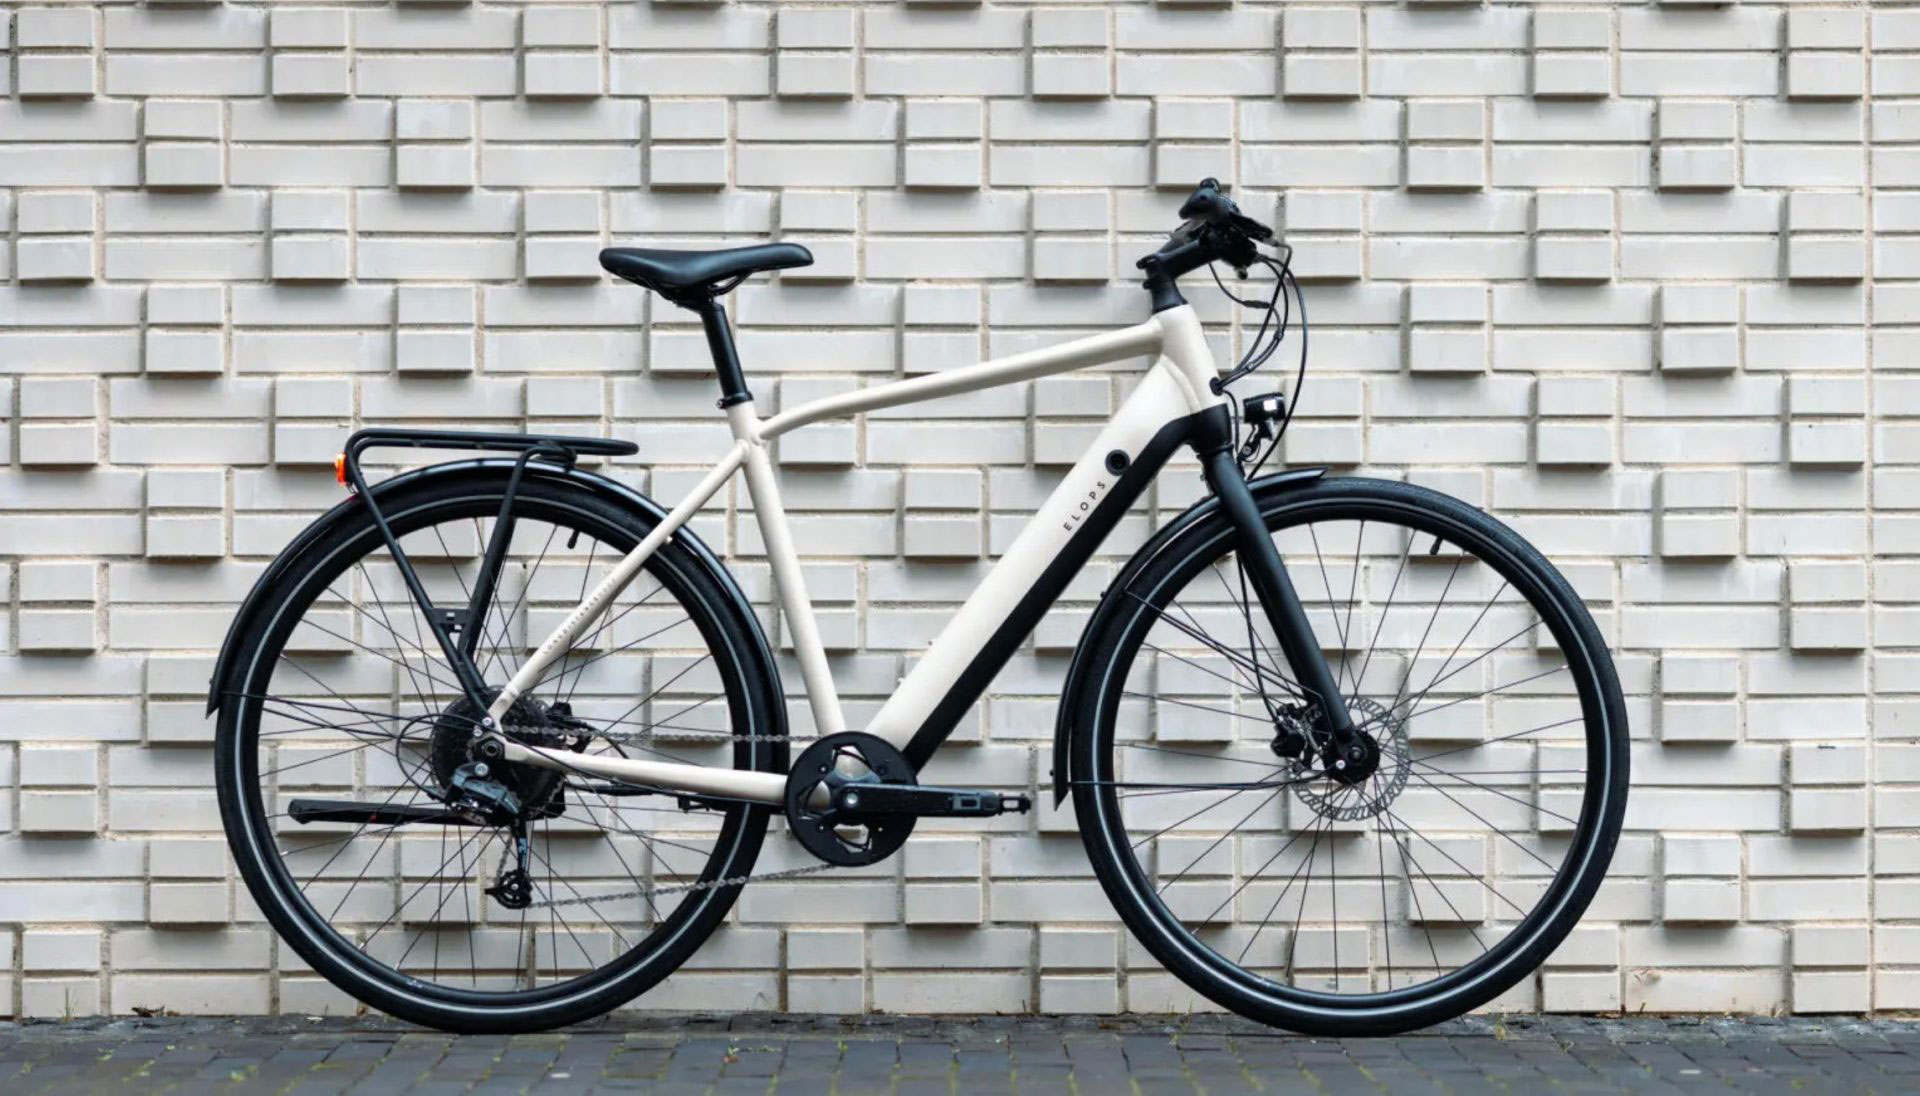 Представлен электрический велосипед Decathlon Elops LD500E с запасом хода 115 км